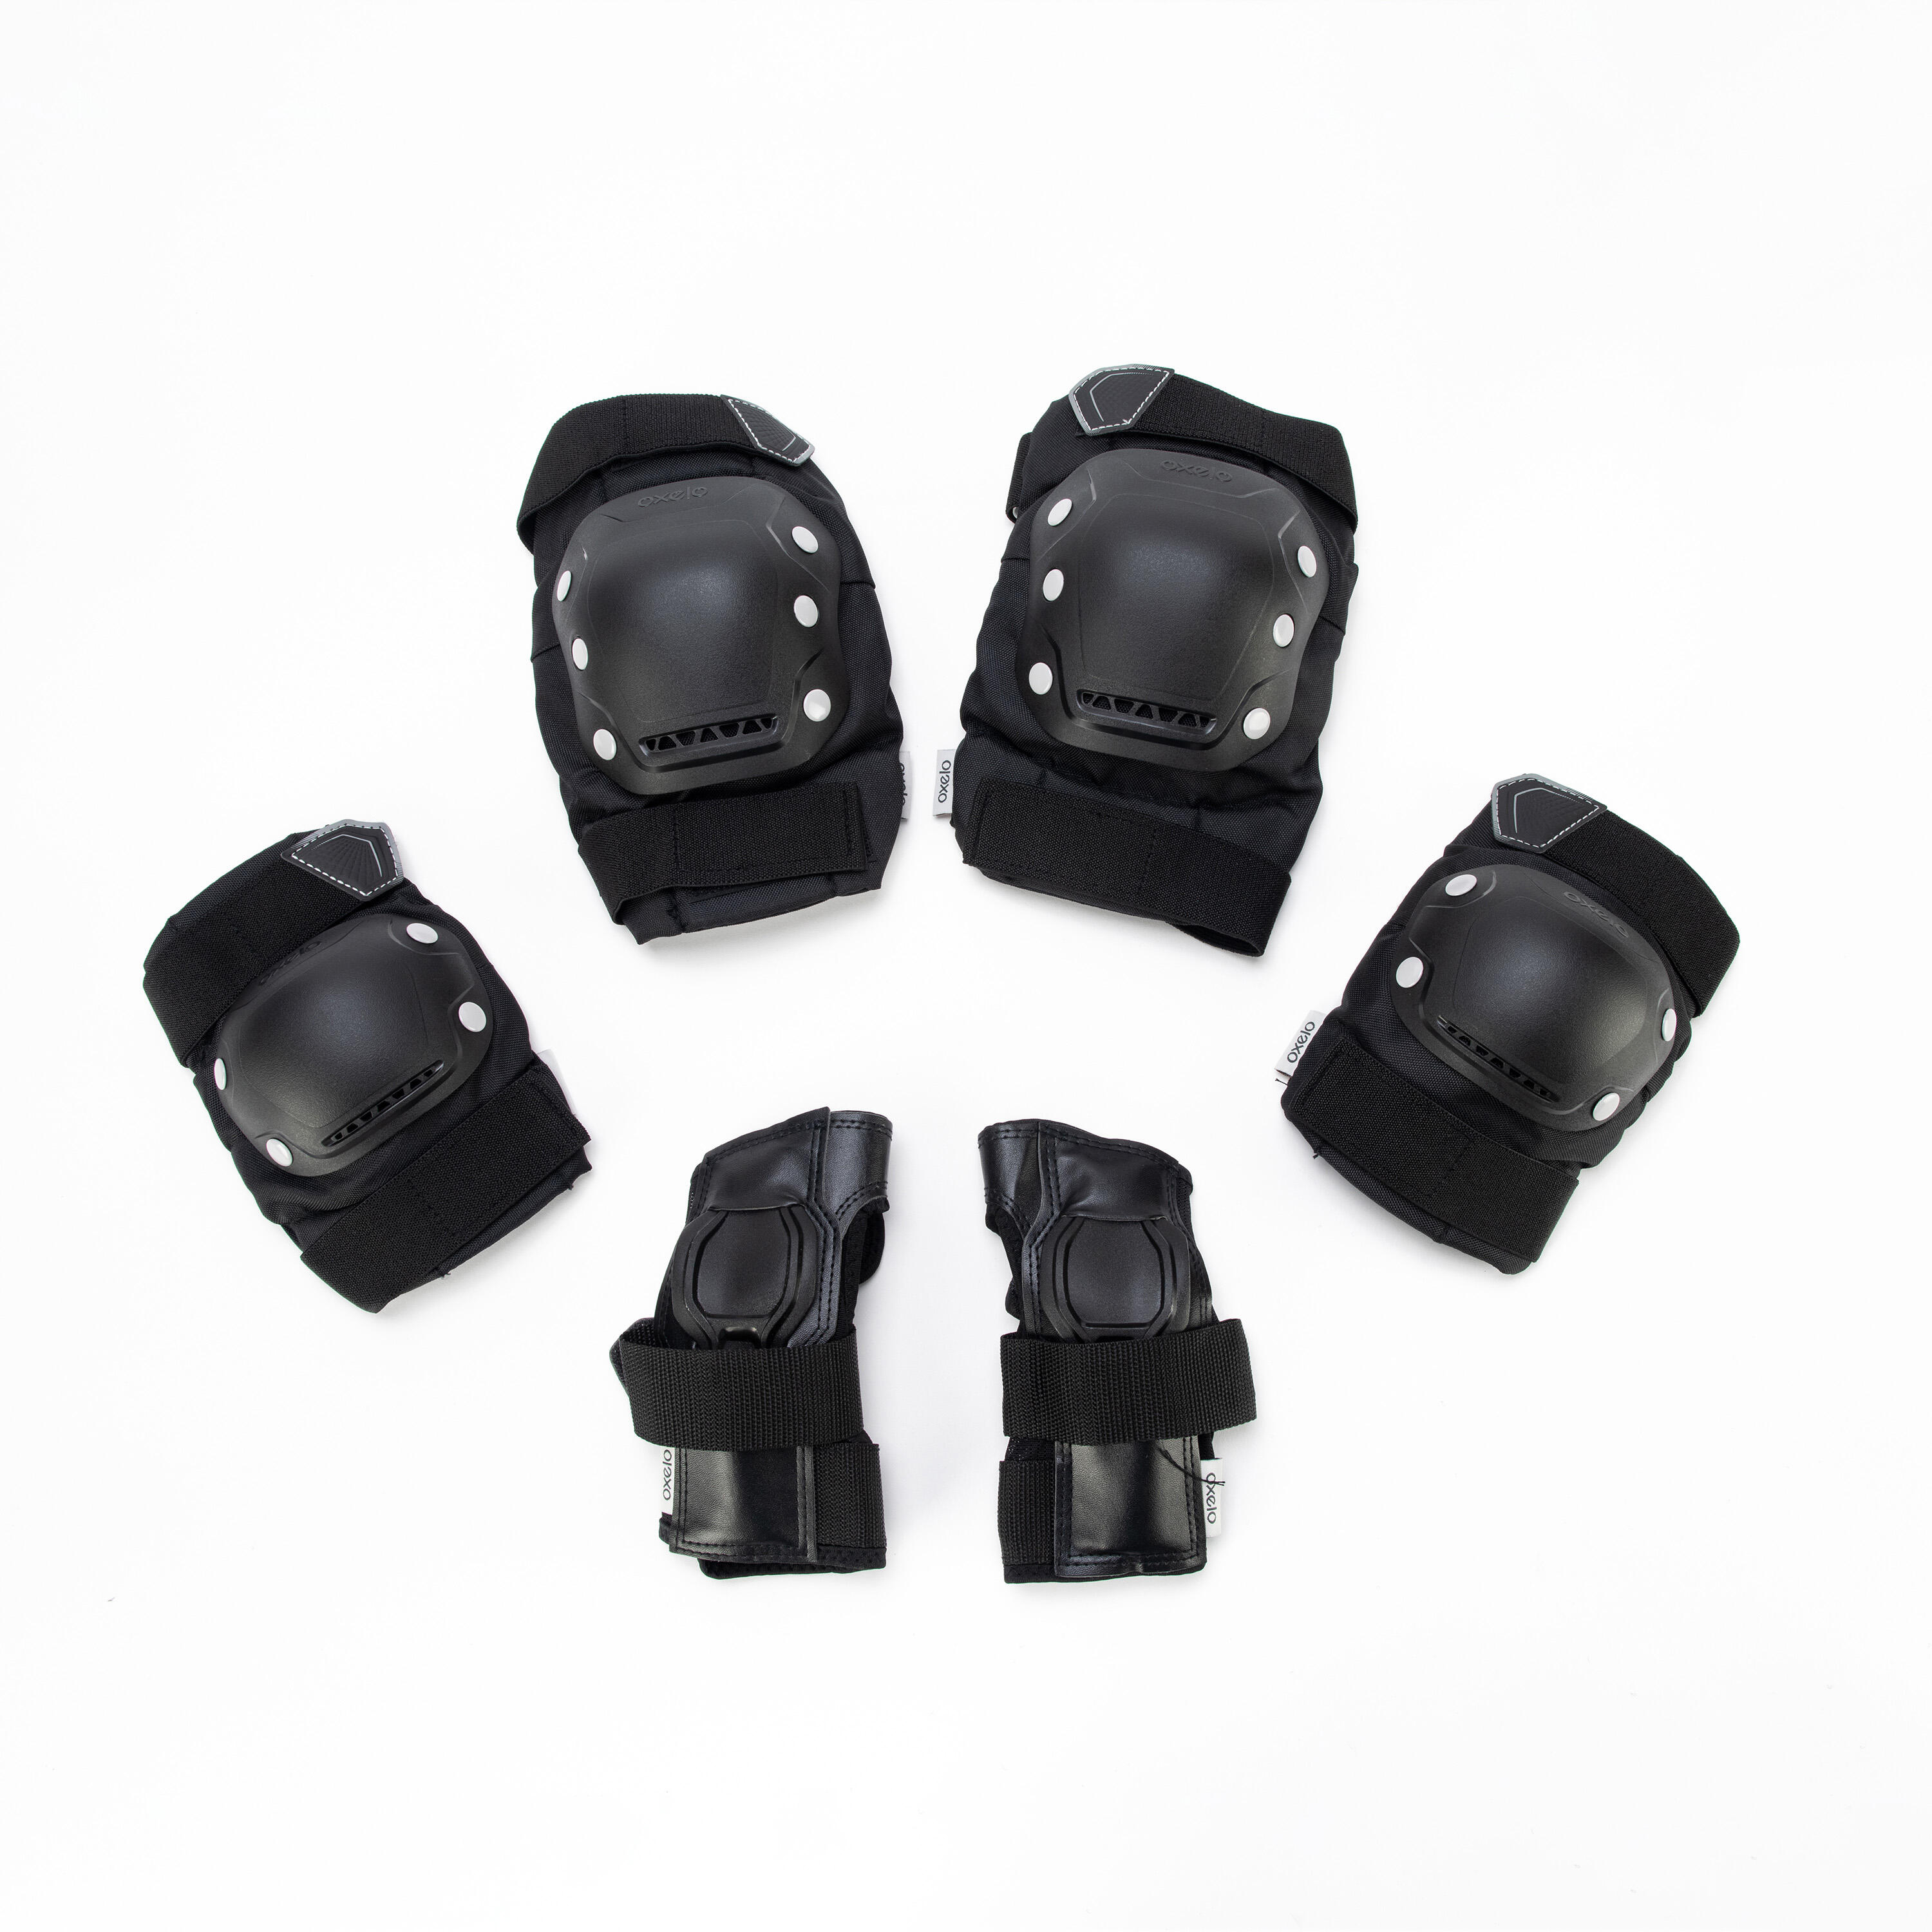 Protections corporelles pour patin à roues alignées - FIT500 noir gris - OXELO